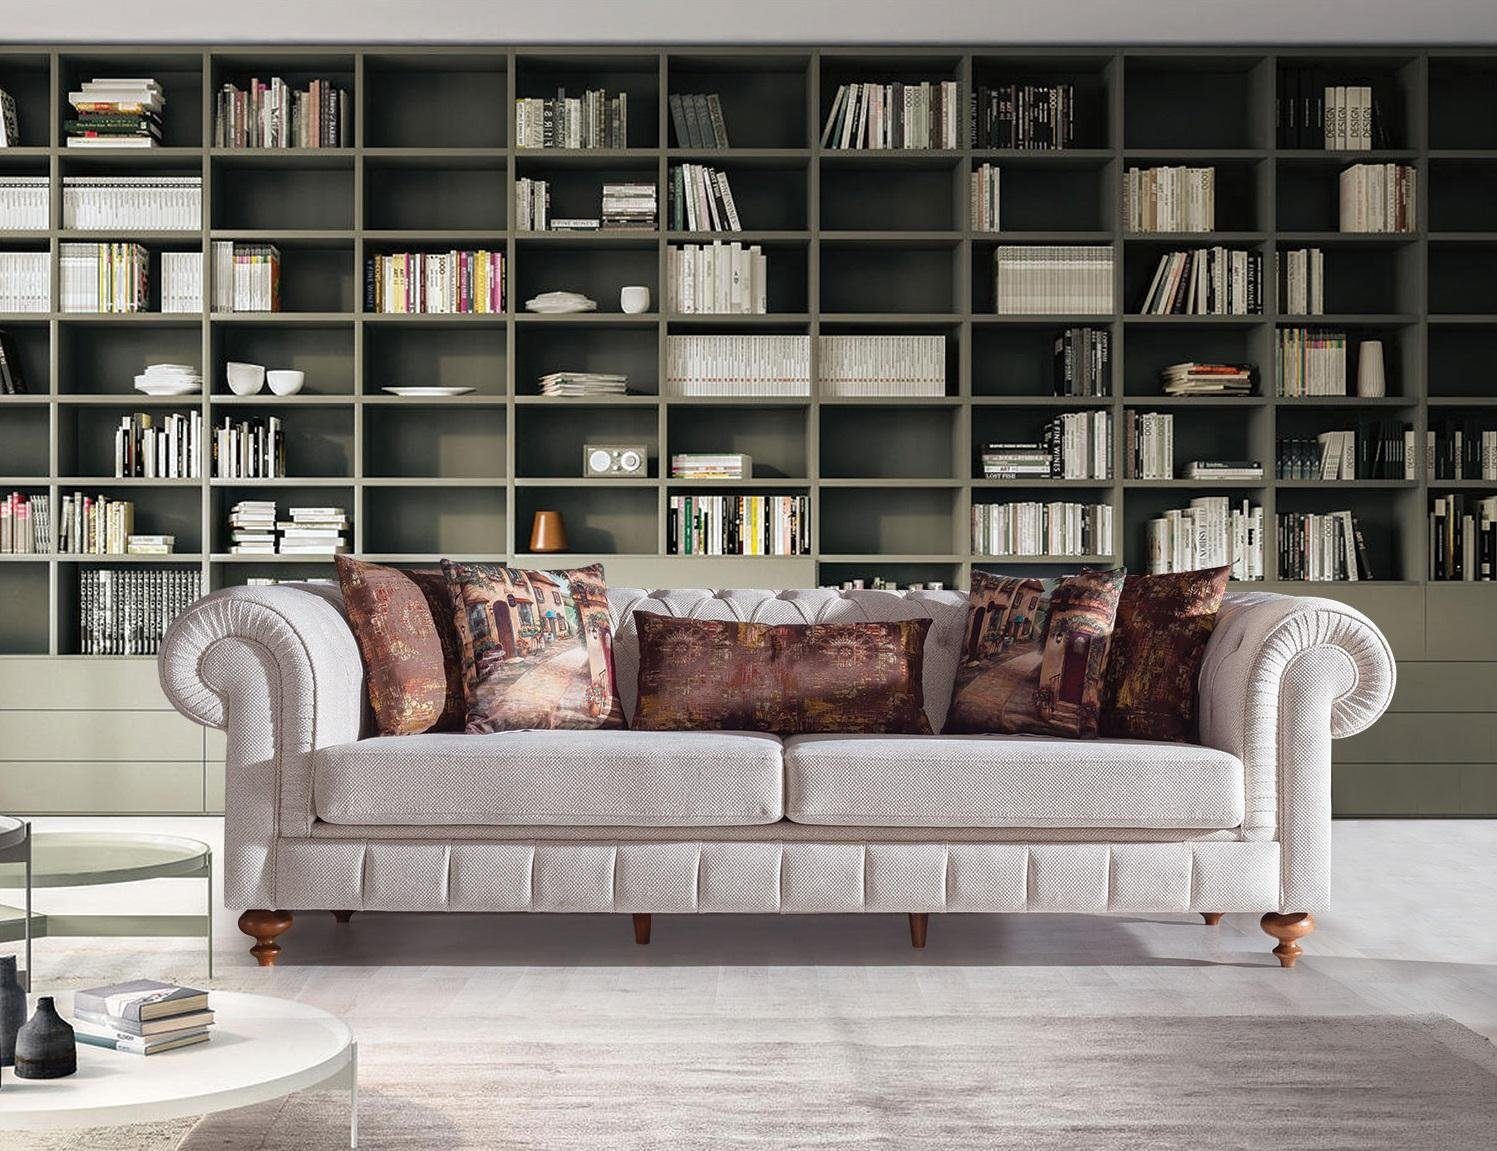 3-er Neu, Made Sofa Sofa in Dreisitzer Europe Grauer Couch Design Möbel JVmoebel